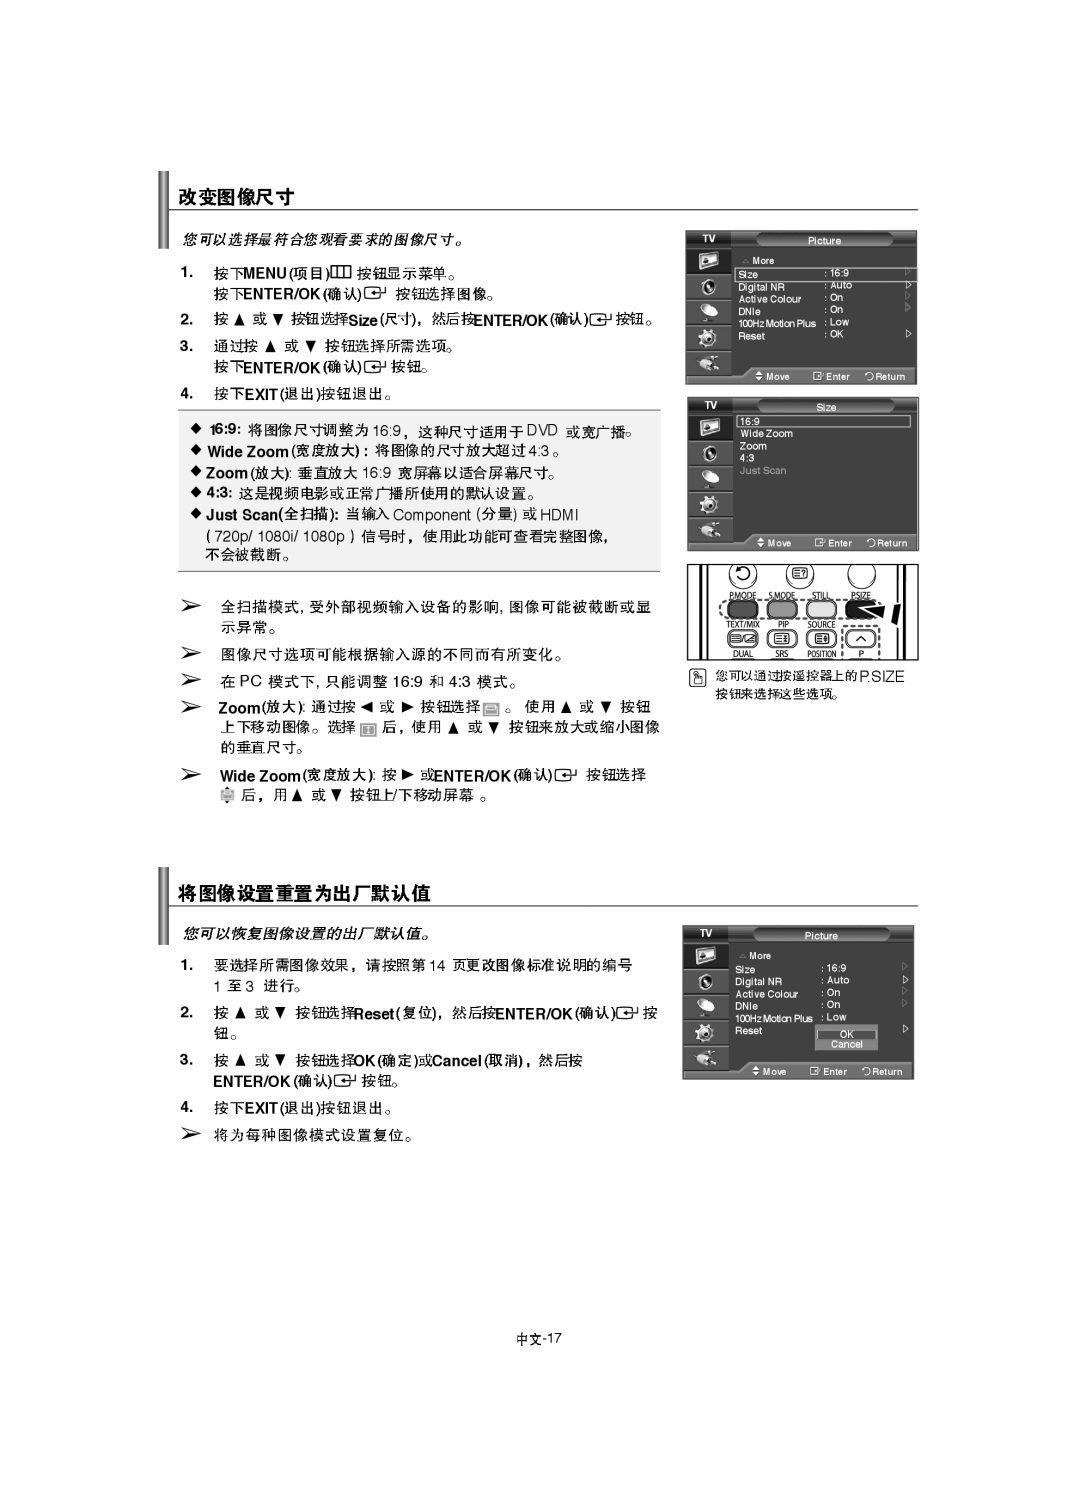 Samsung LA46F8, LA52F8, LA40F8 manual P.Size, Just Scan 